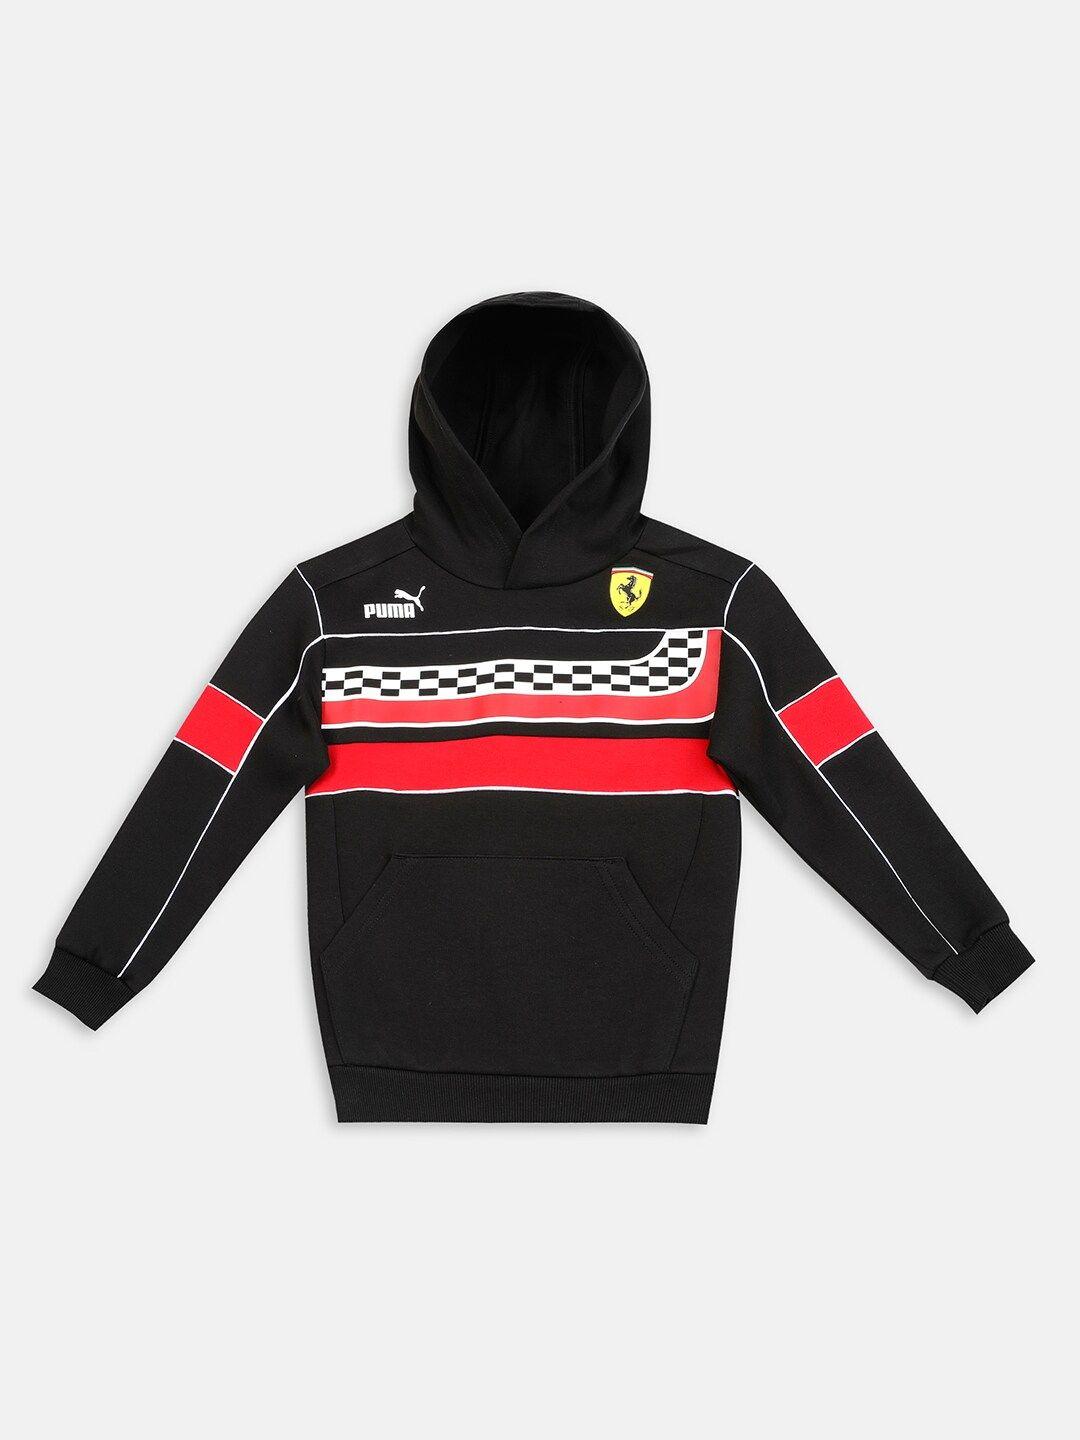 puma motorsport unisex kids black printed sweatshirt